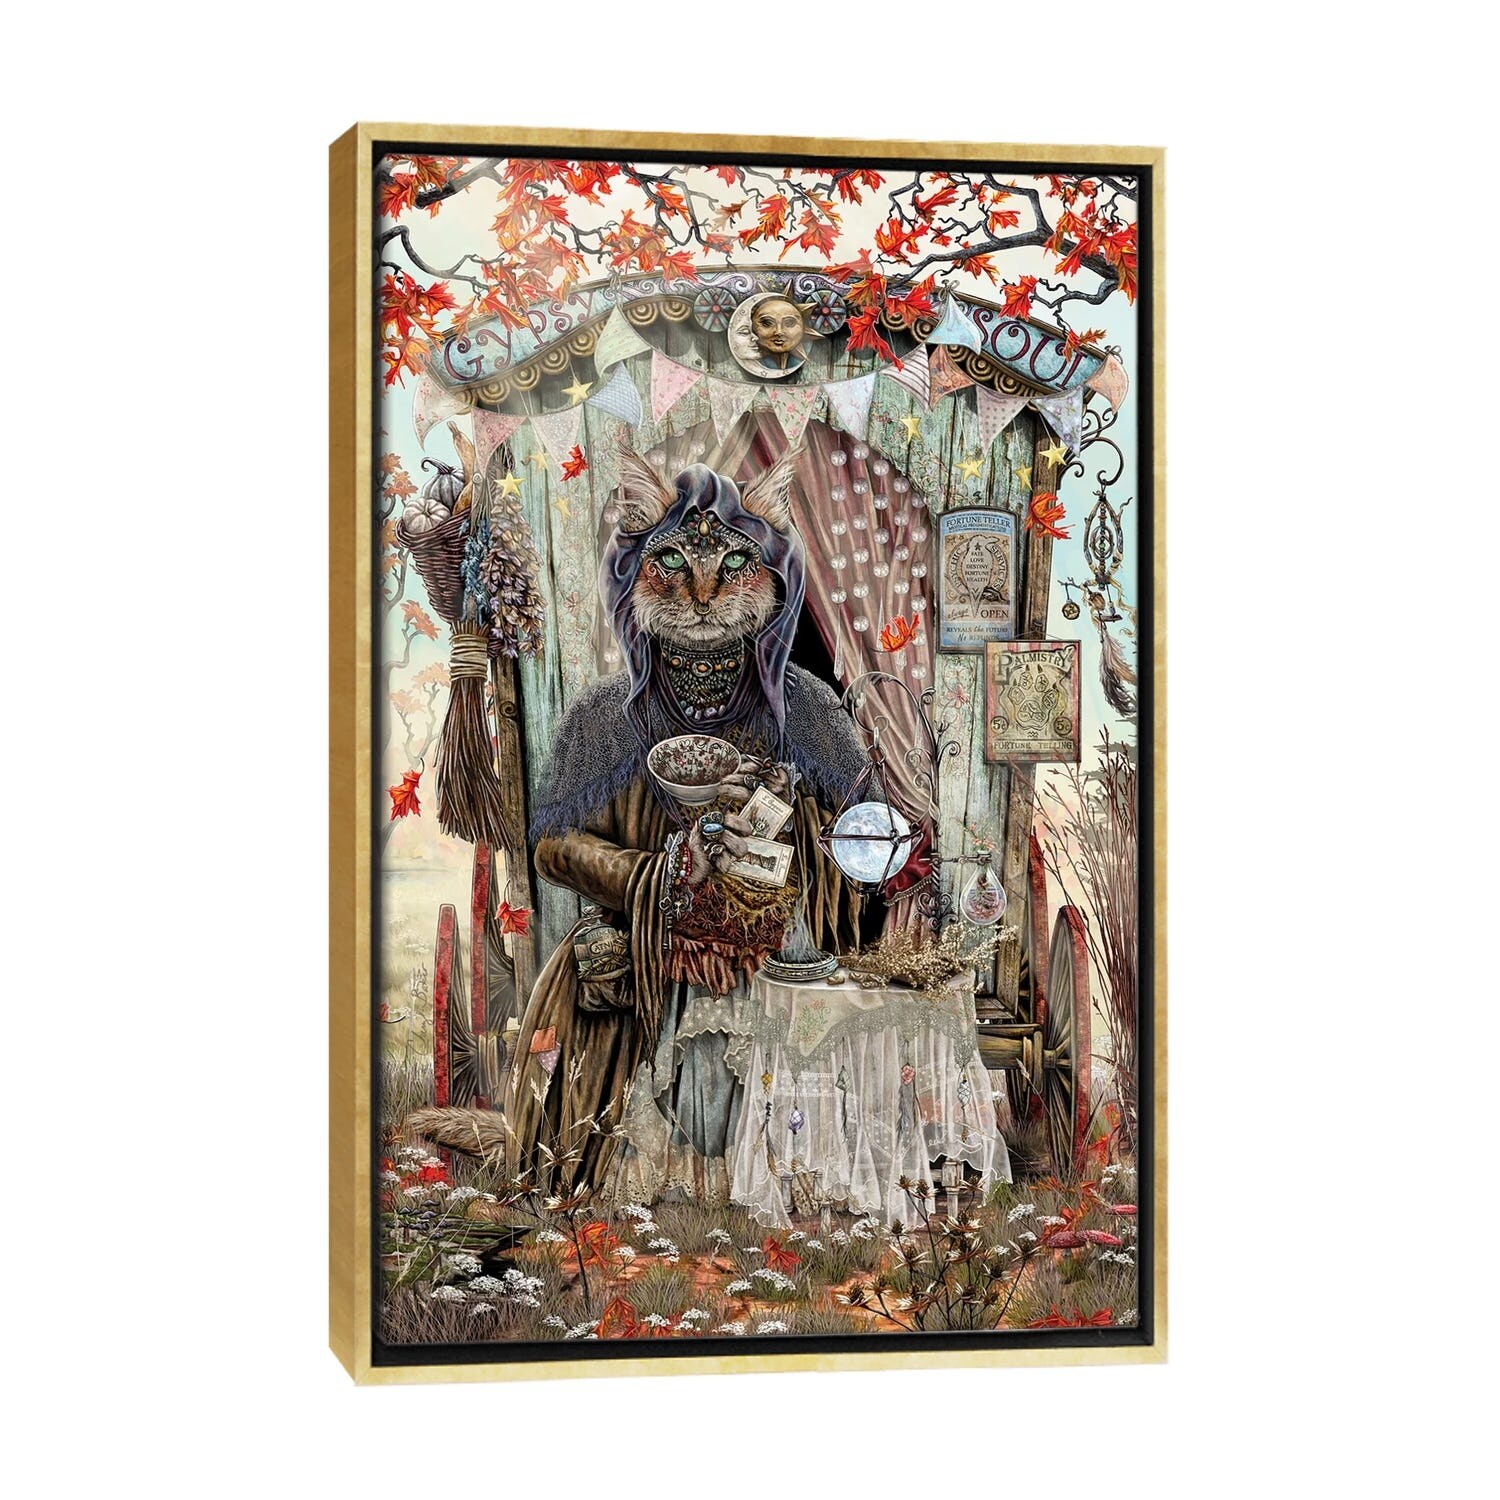 The Gypsy Fortune Teller. - Timeless Art of Cheryl Baker